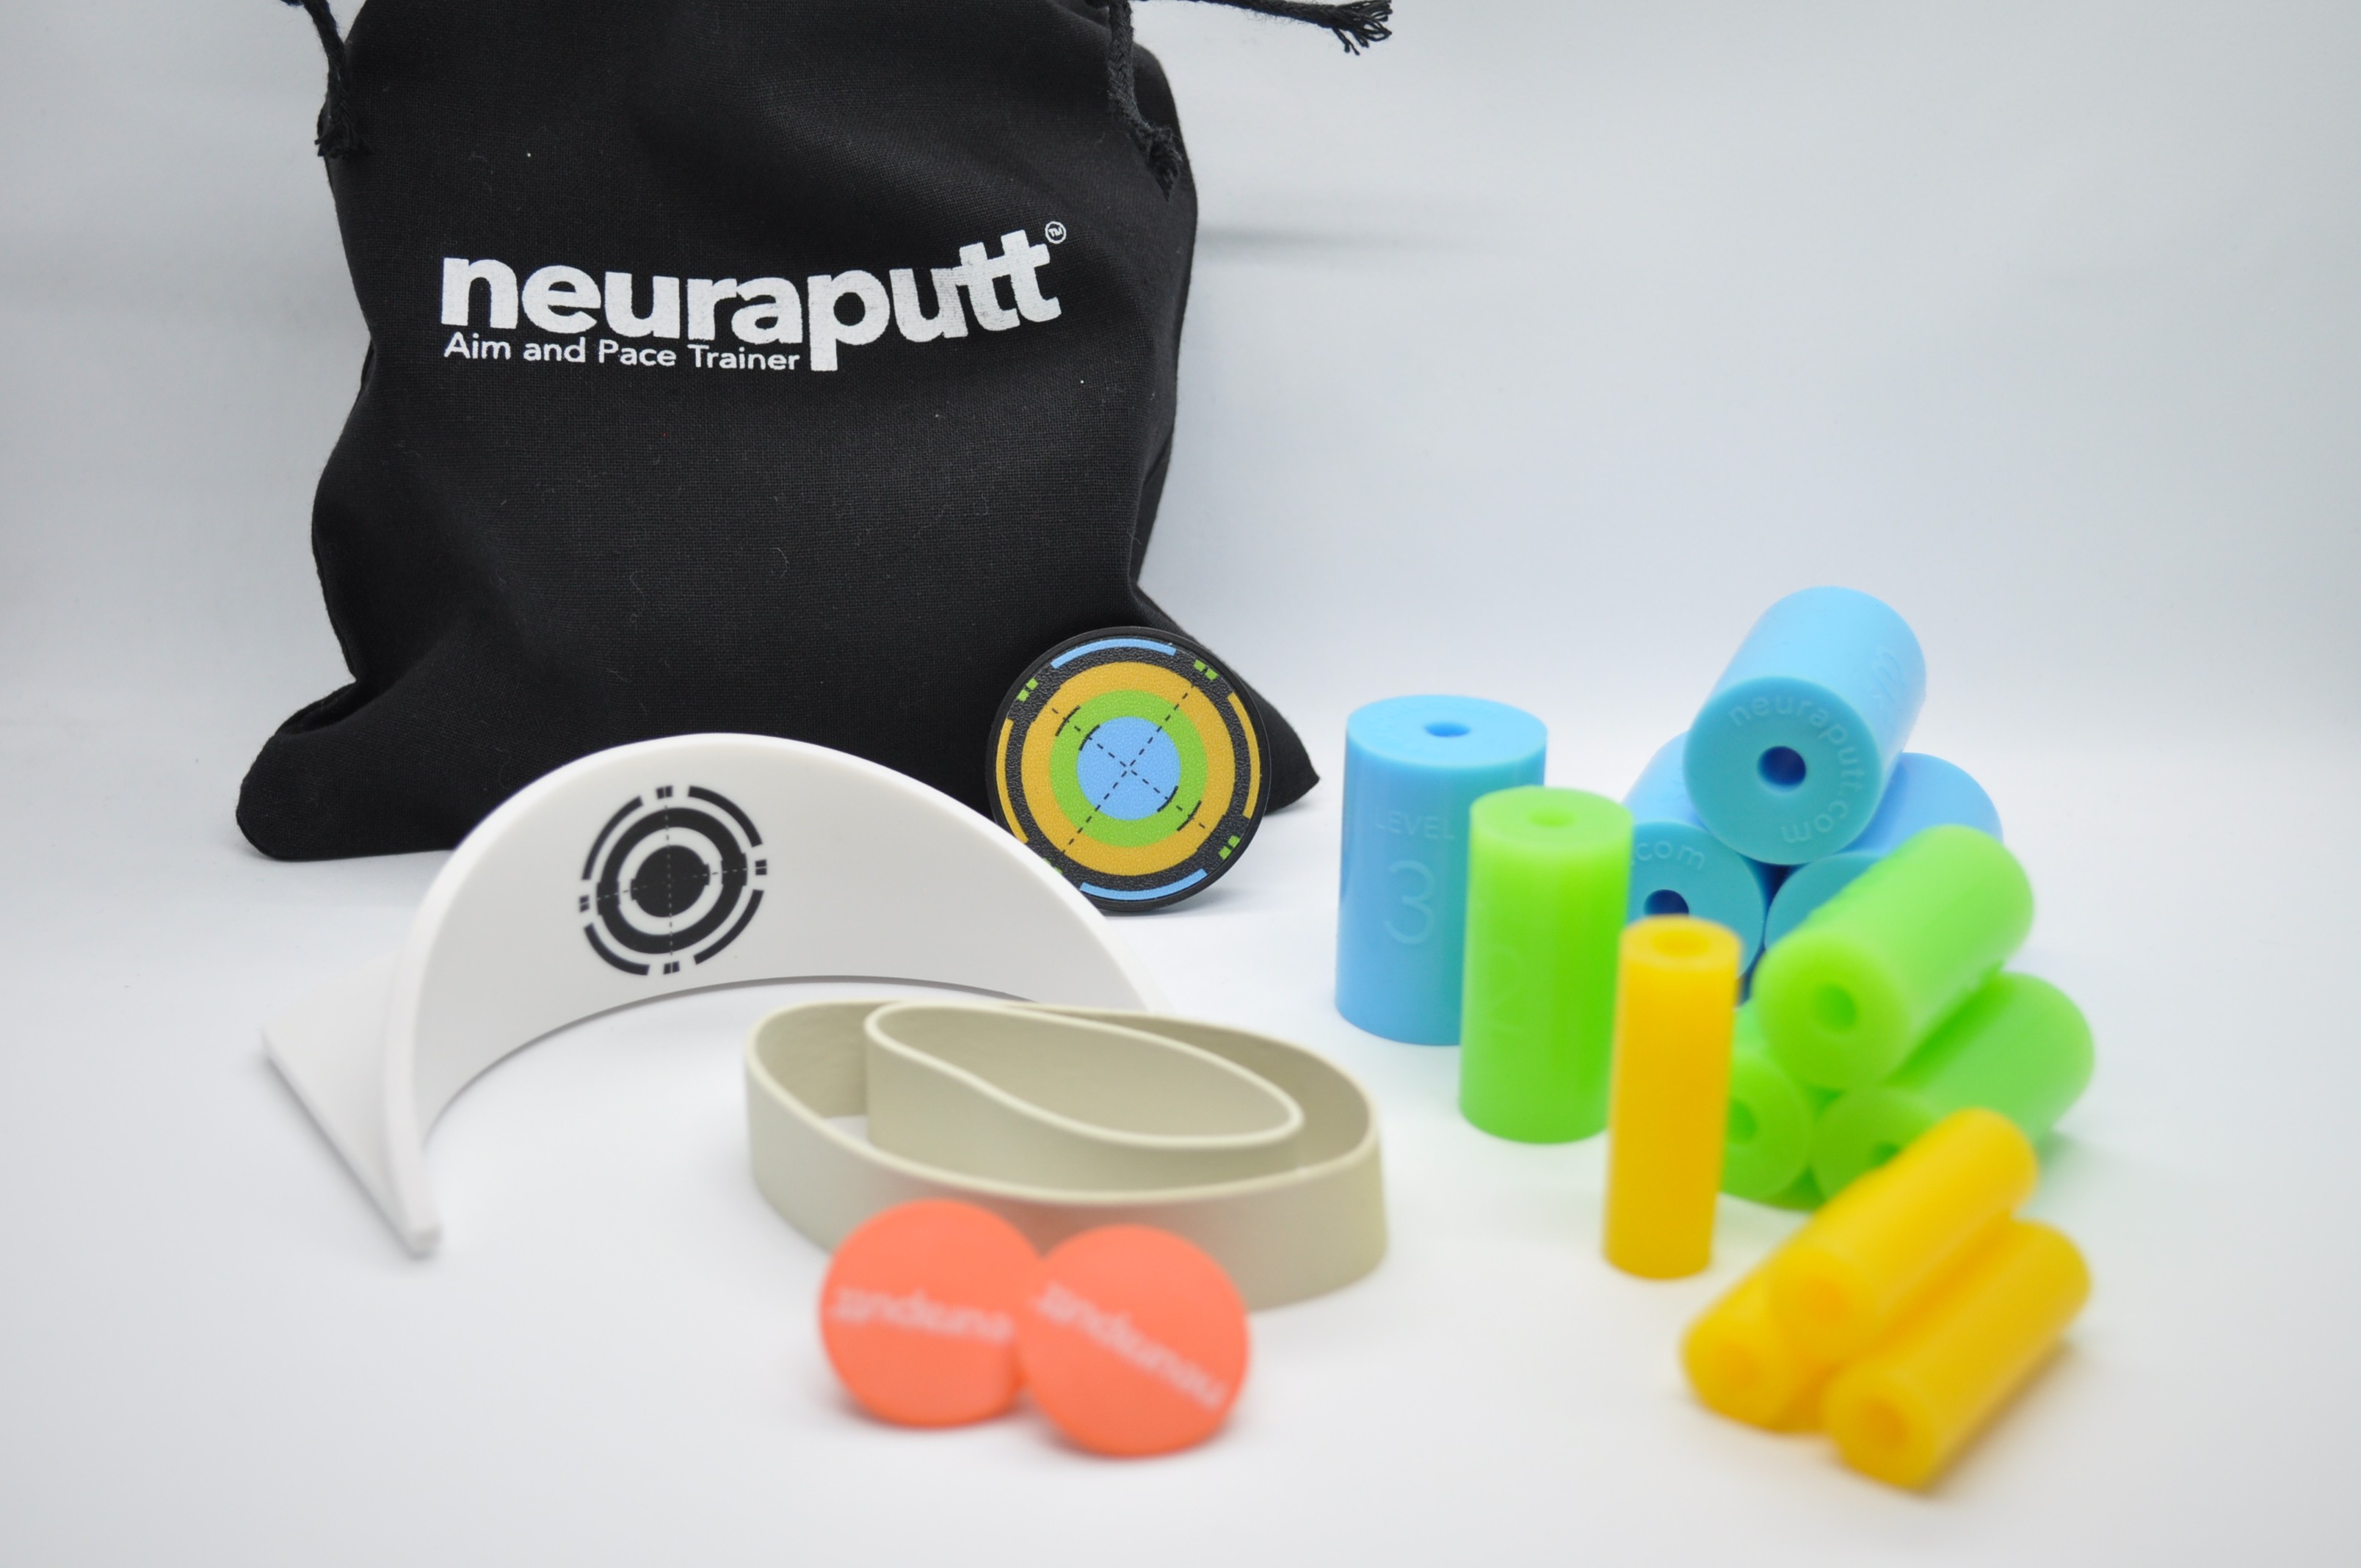 NeuraPutt Accessories